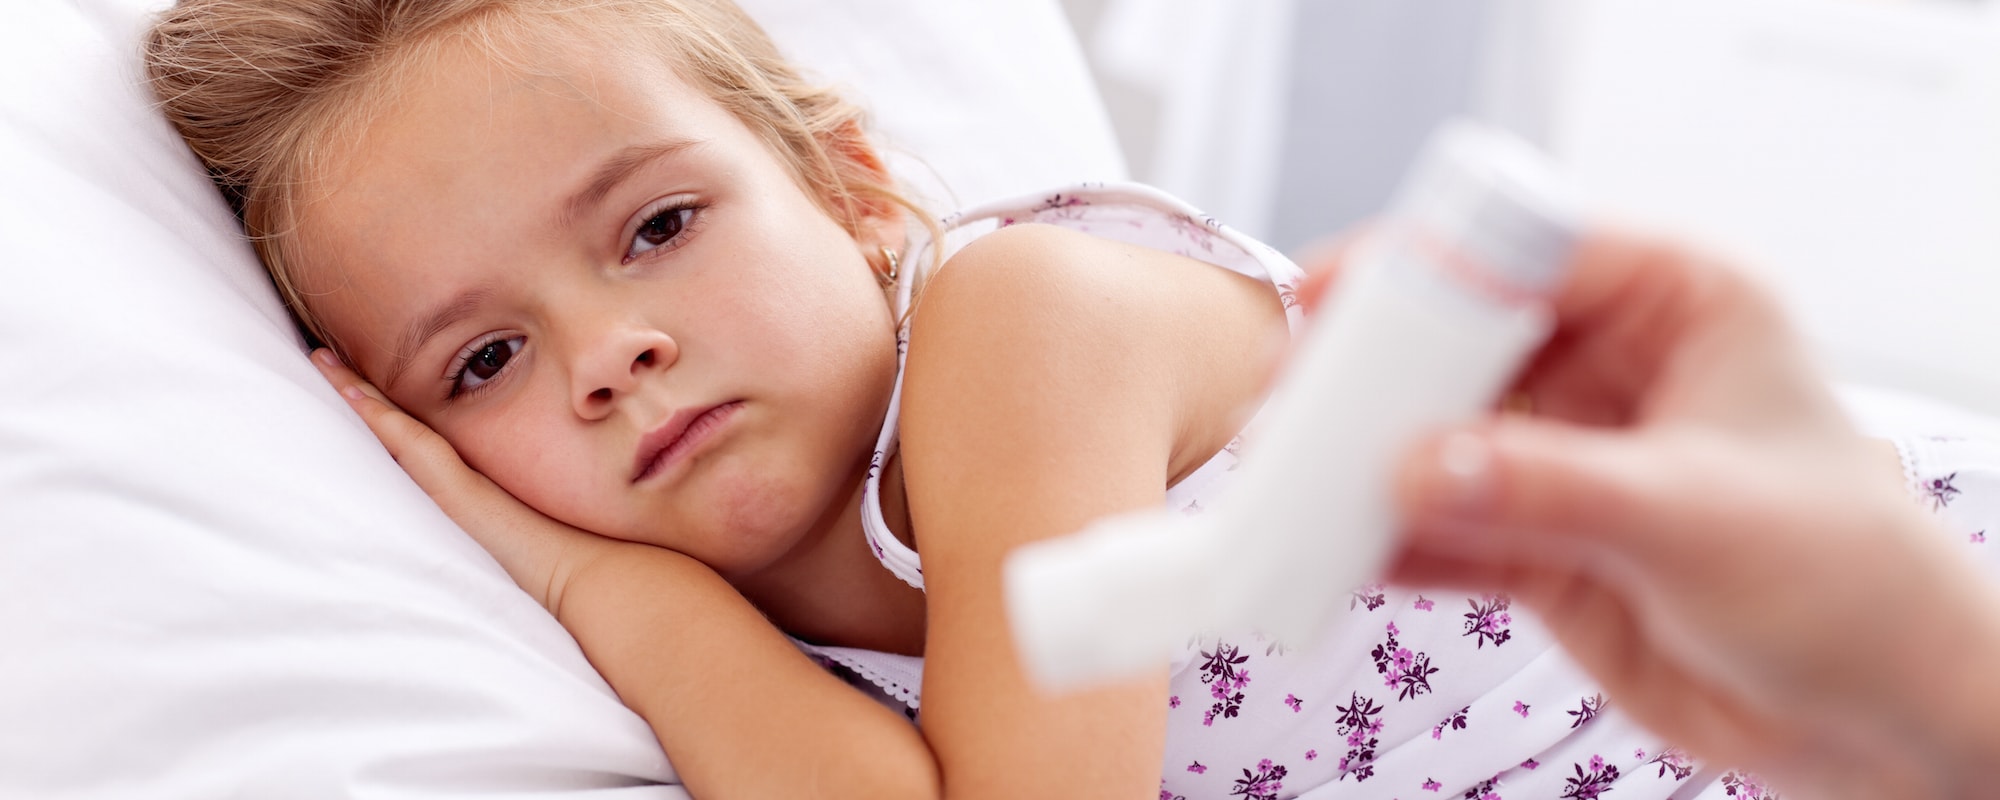 Τα παιδιά χωρίς αλλεργίες μπορούν να έχουν ασθματικά συμπτώματα